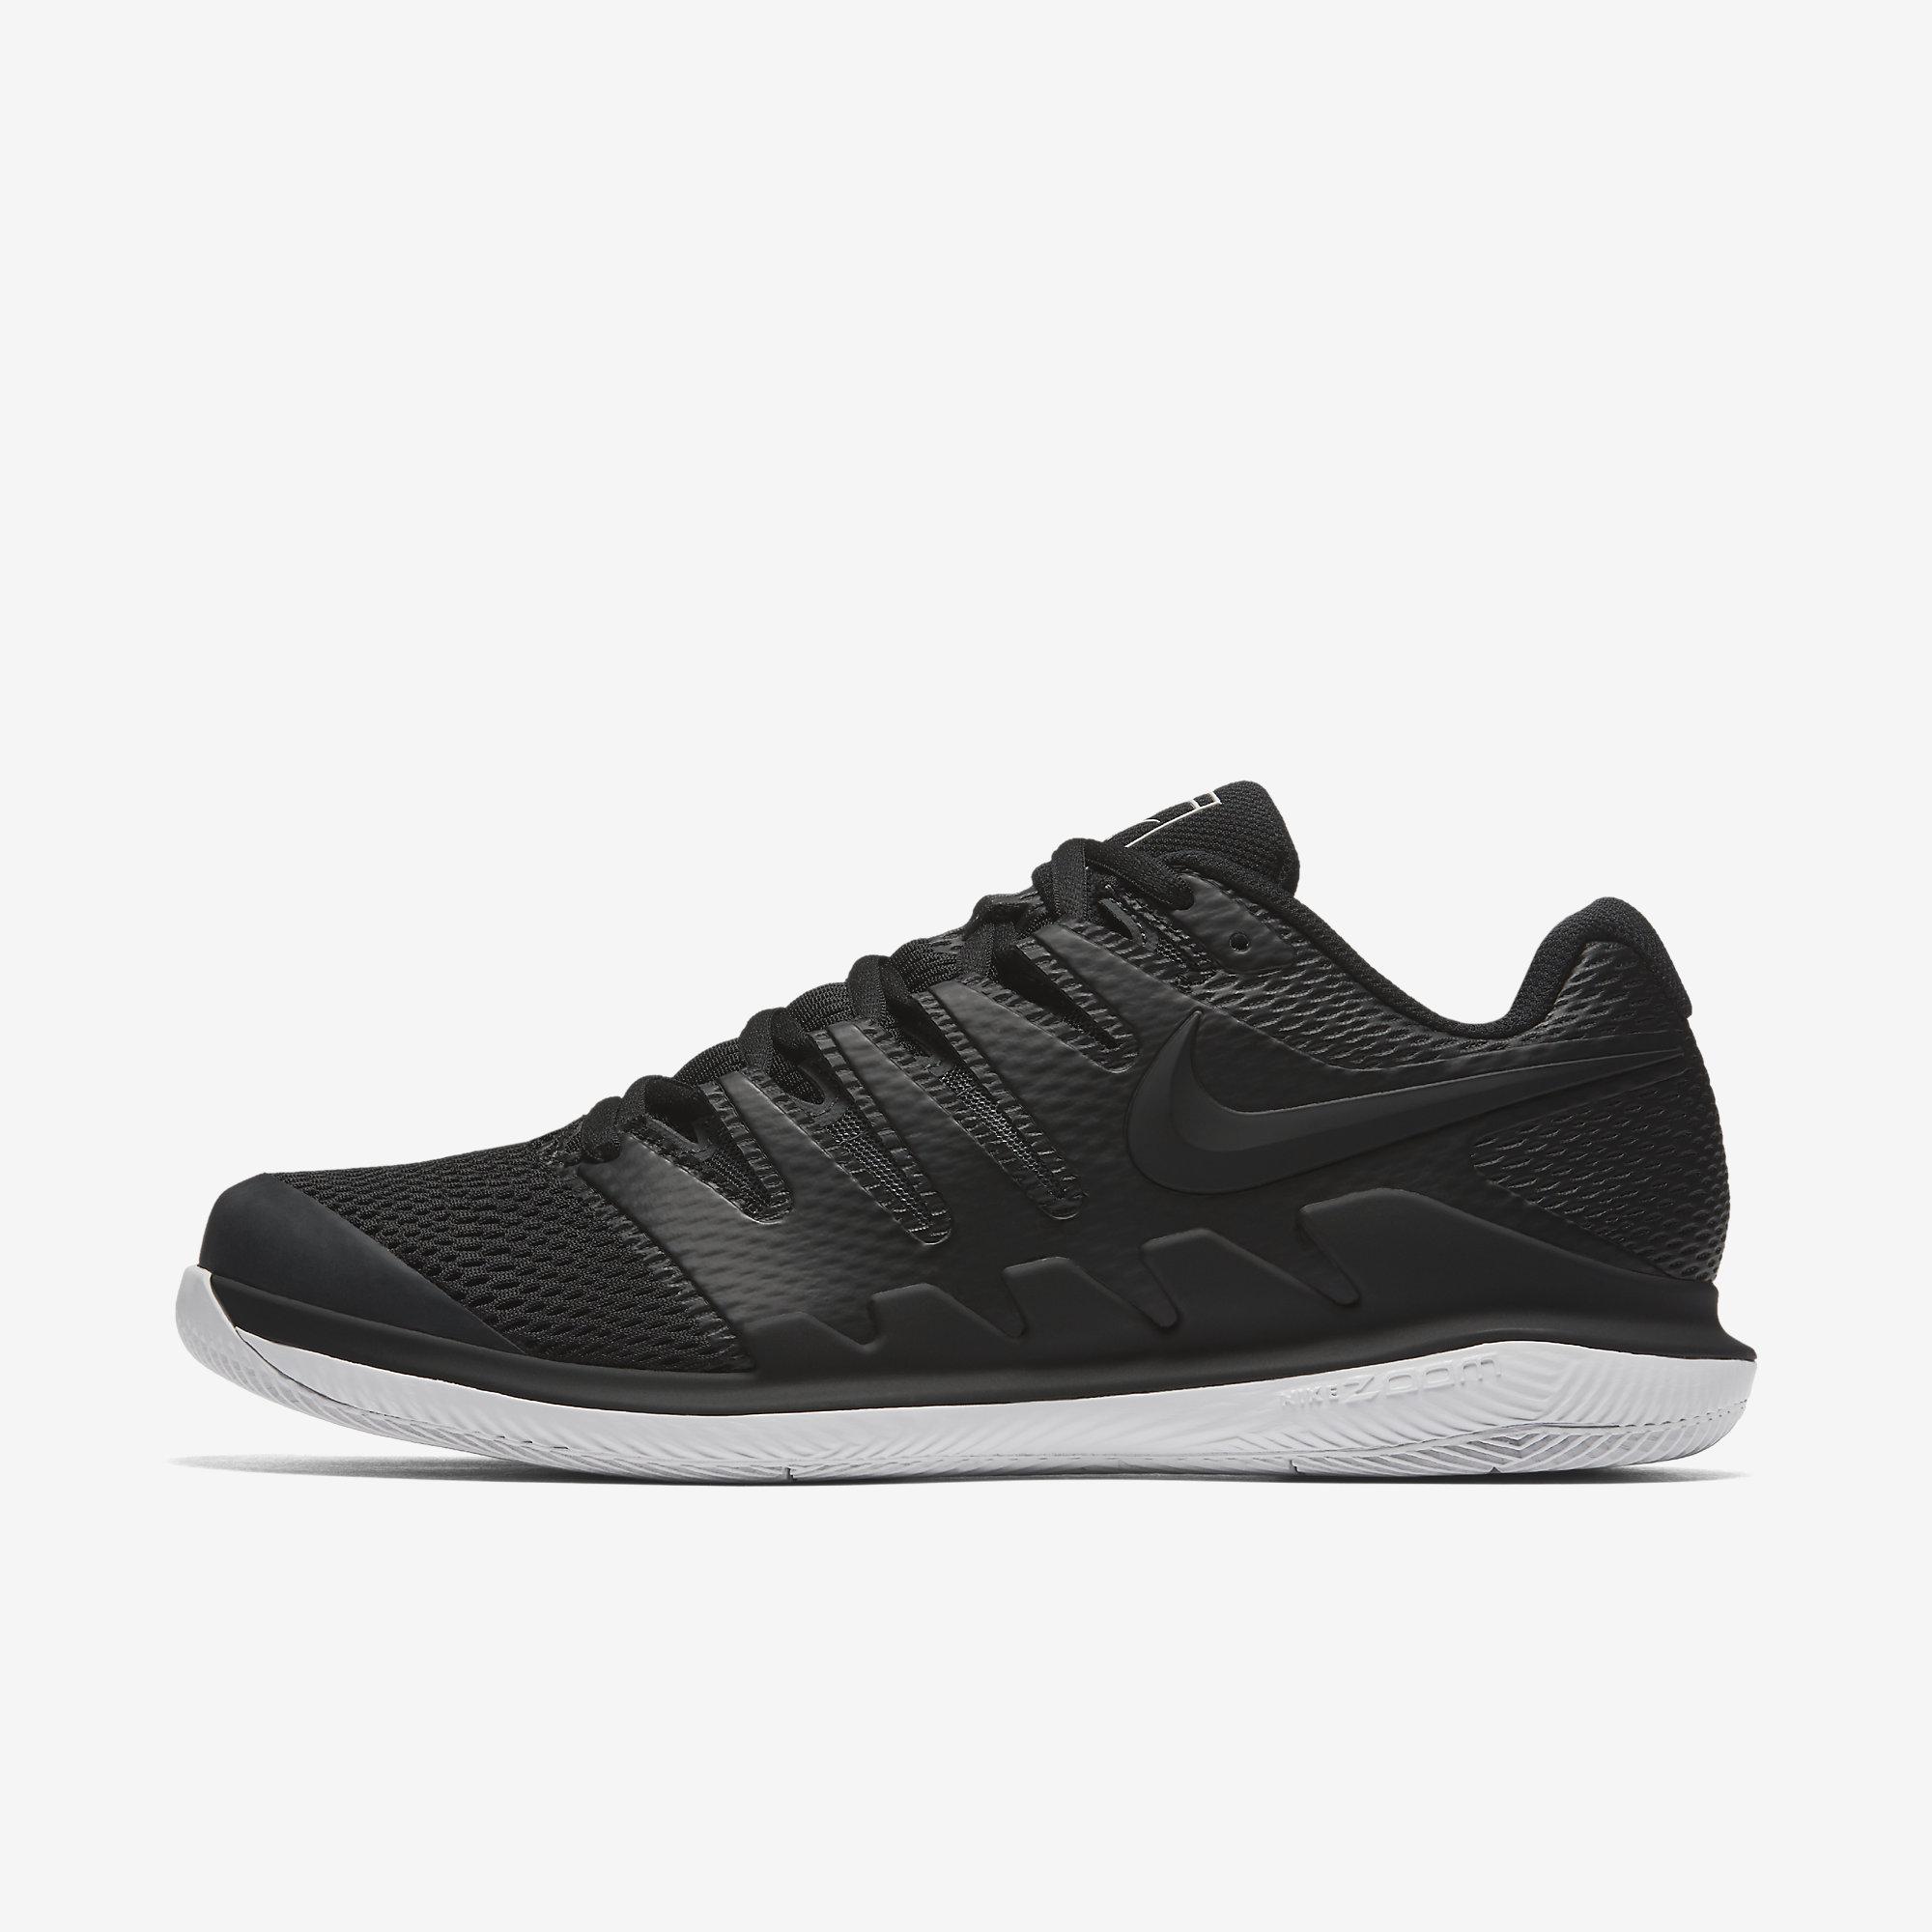 Nike Mens Air Zoom Vapor X Tennis Shoes - Black/White - Tennisnuts.com